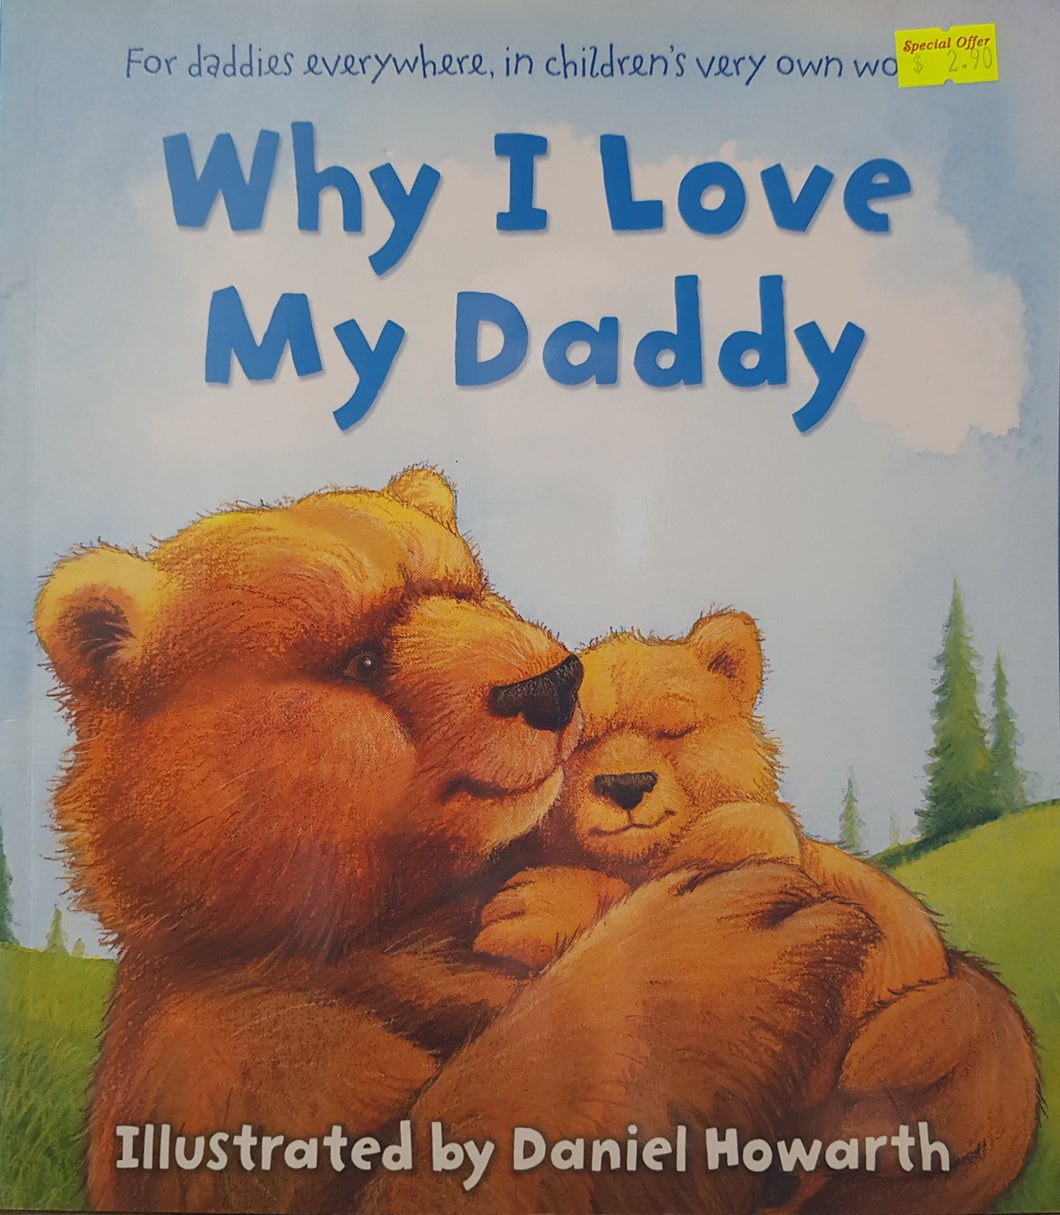 Why I Love My Daddy - Daniel Howarth